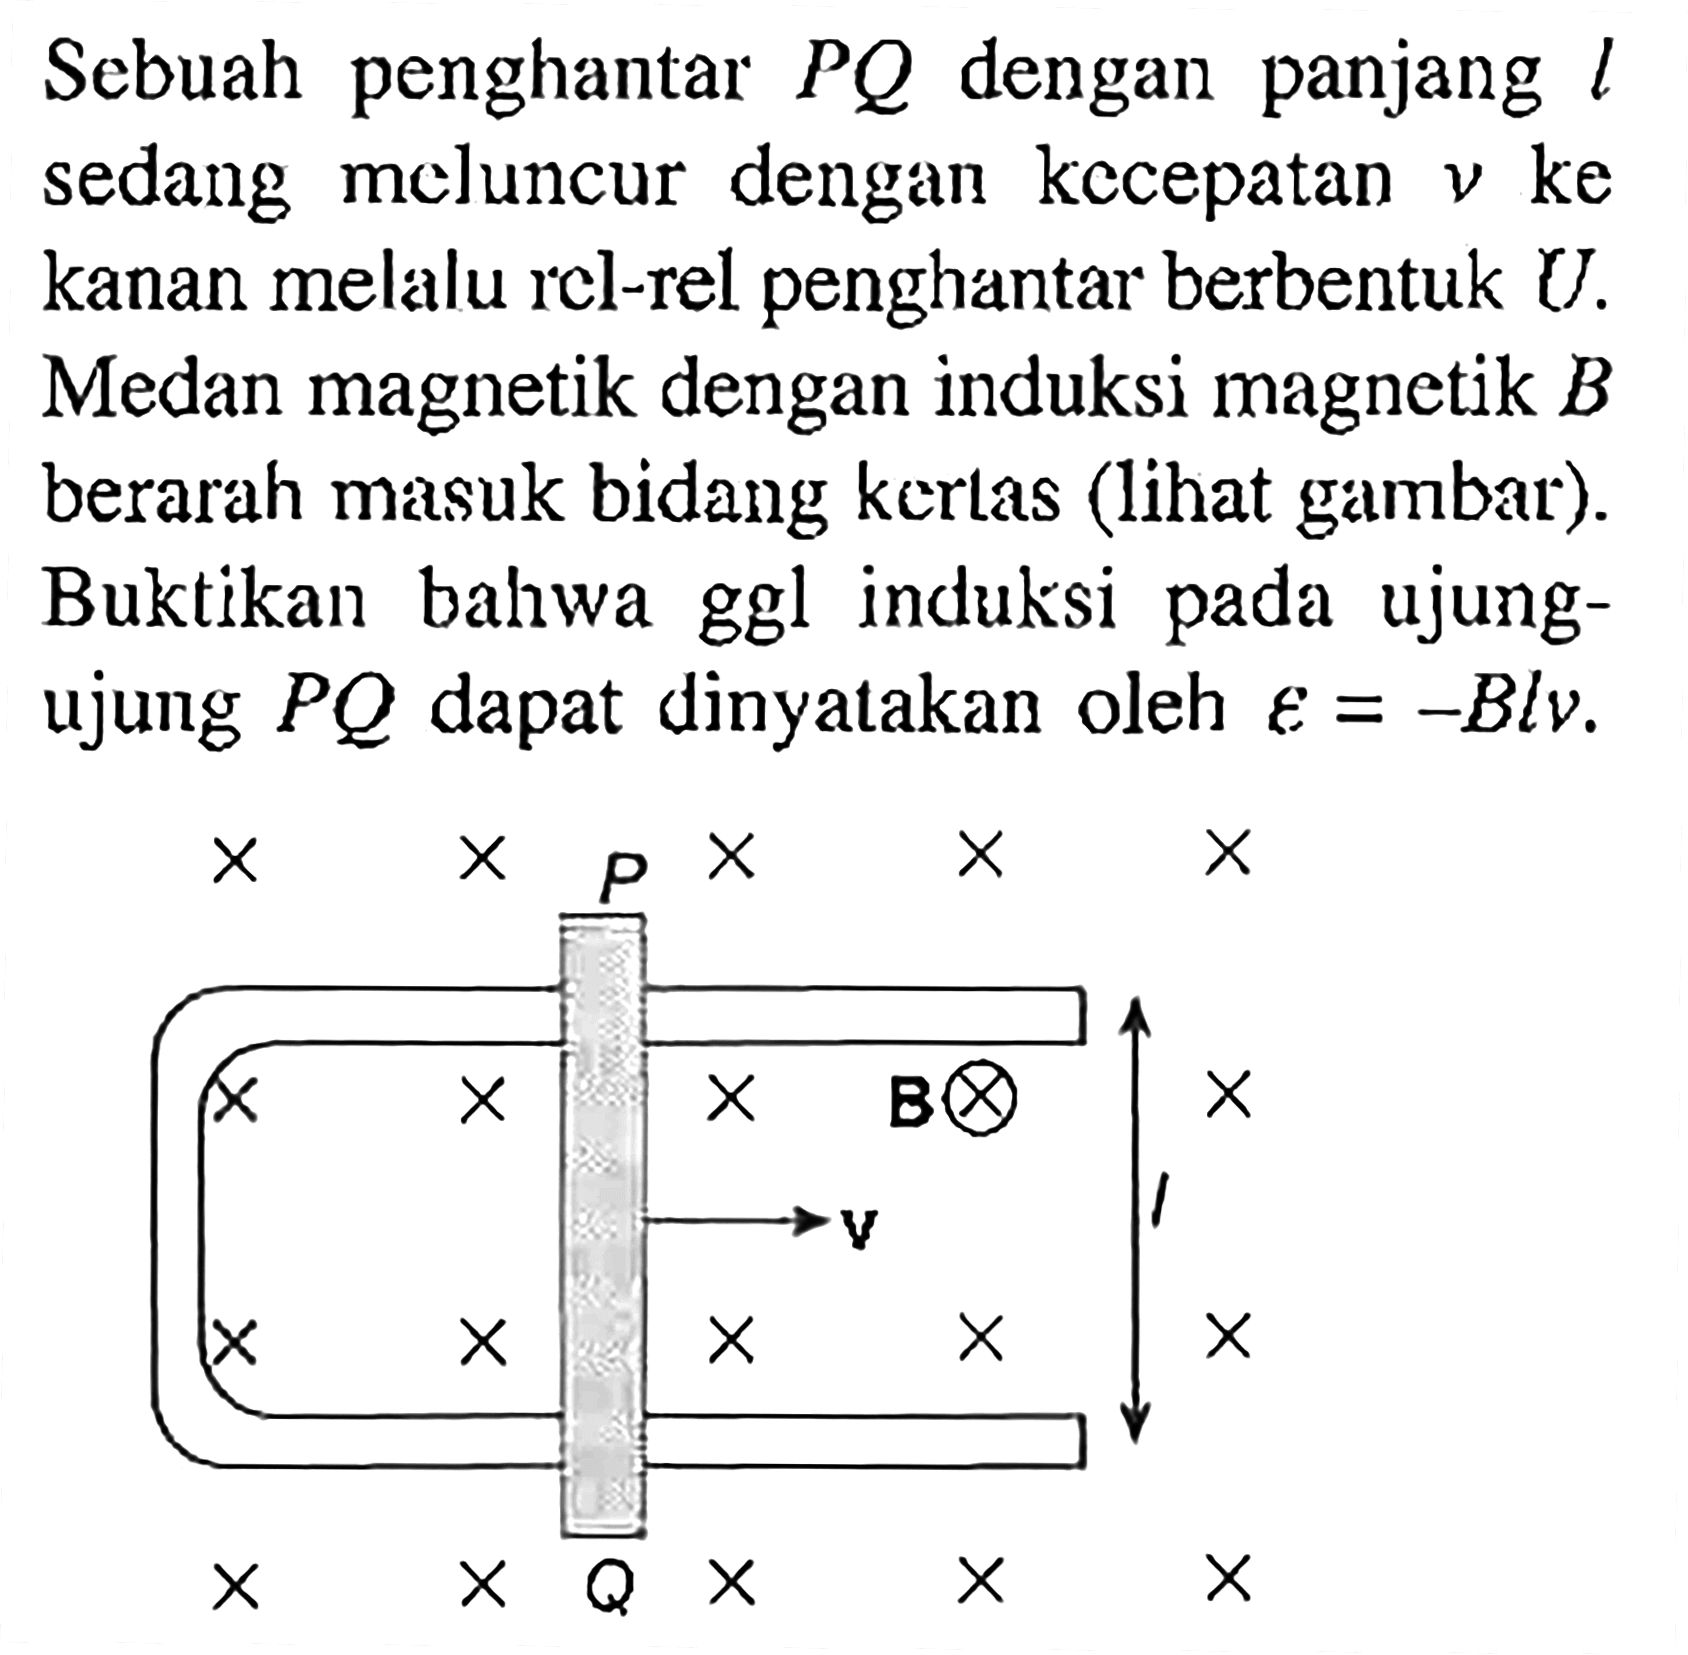 Sebuah penghantar PQ dengan panjang l sedang meluncur dengan kccepatan v ke kanan melalu rel-rel penghantar berbentuk U. Medan magnetik dengan induksi magnetik B berarah masuk bidang kertas (lihat gambar). Buktikan bahwa ggl induksi pada ujung- ujung PQ dapat dinyatakan oleh e = -Blv. P B l v Q